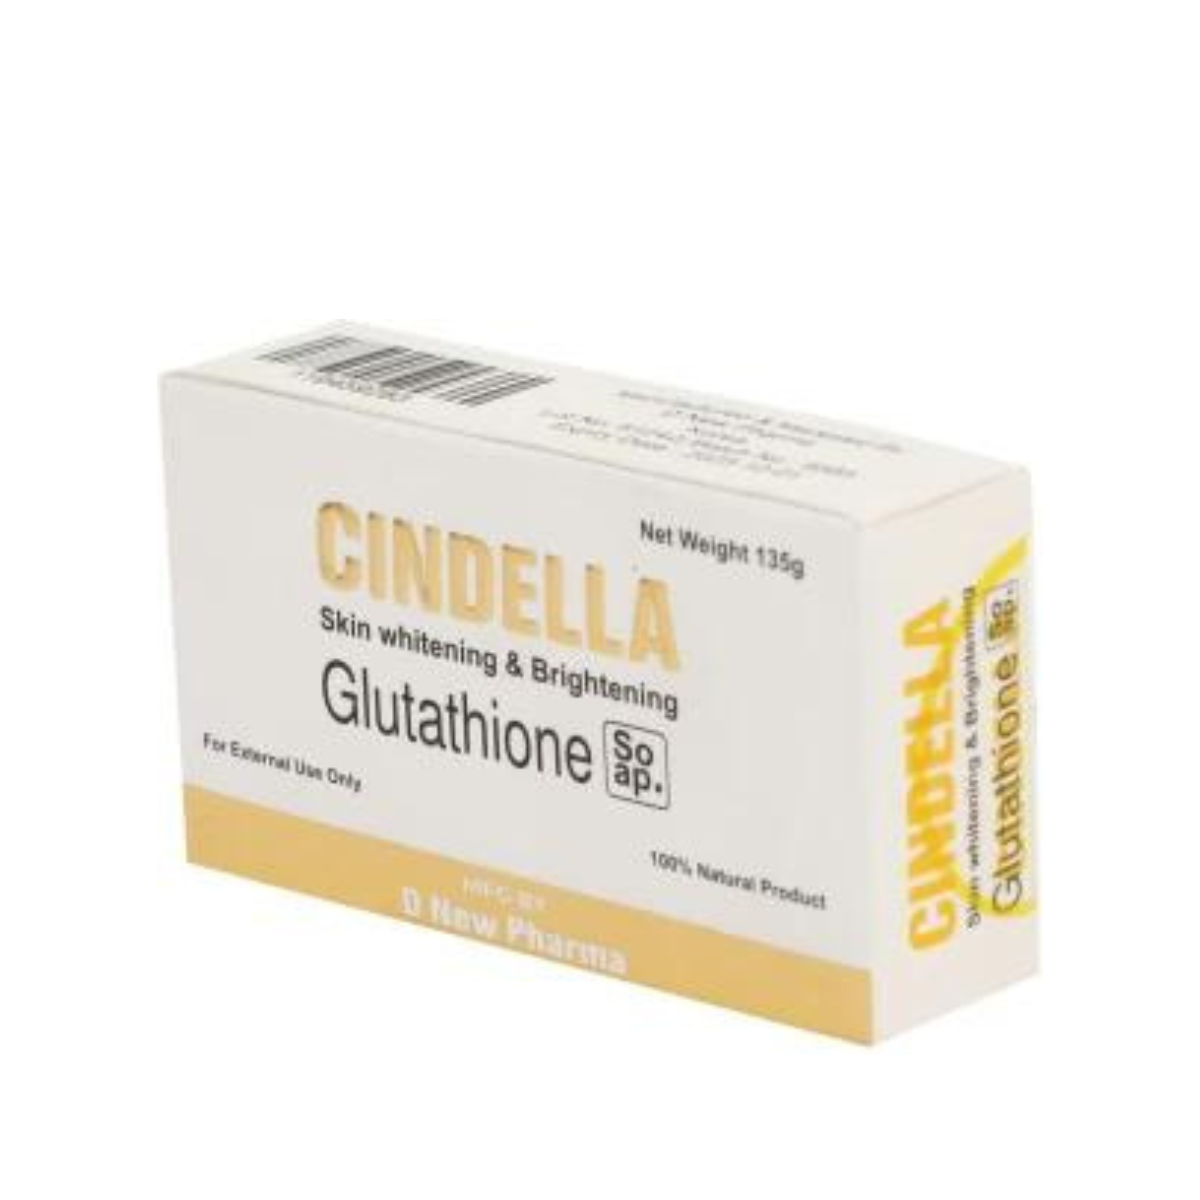 Cindella Glutathione skin whitening and lightening Soap(135 gm)